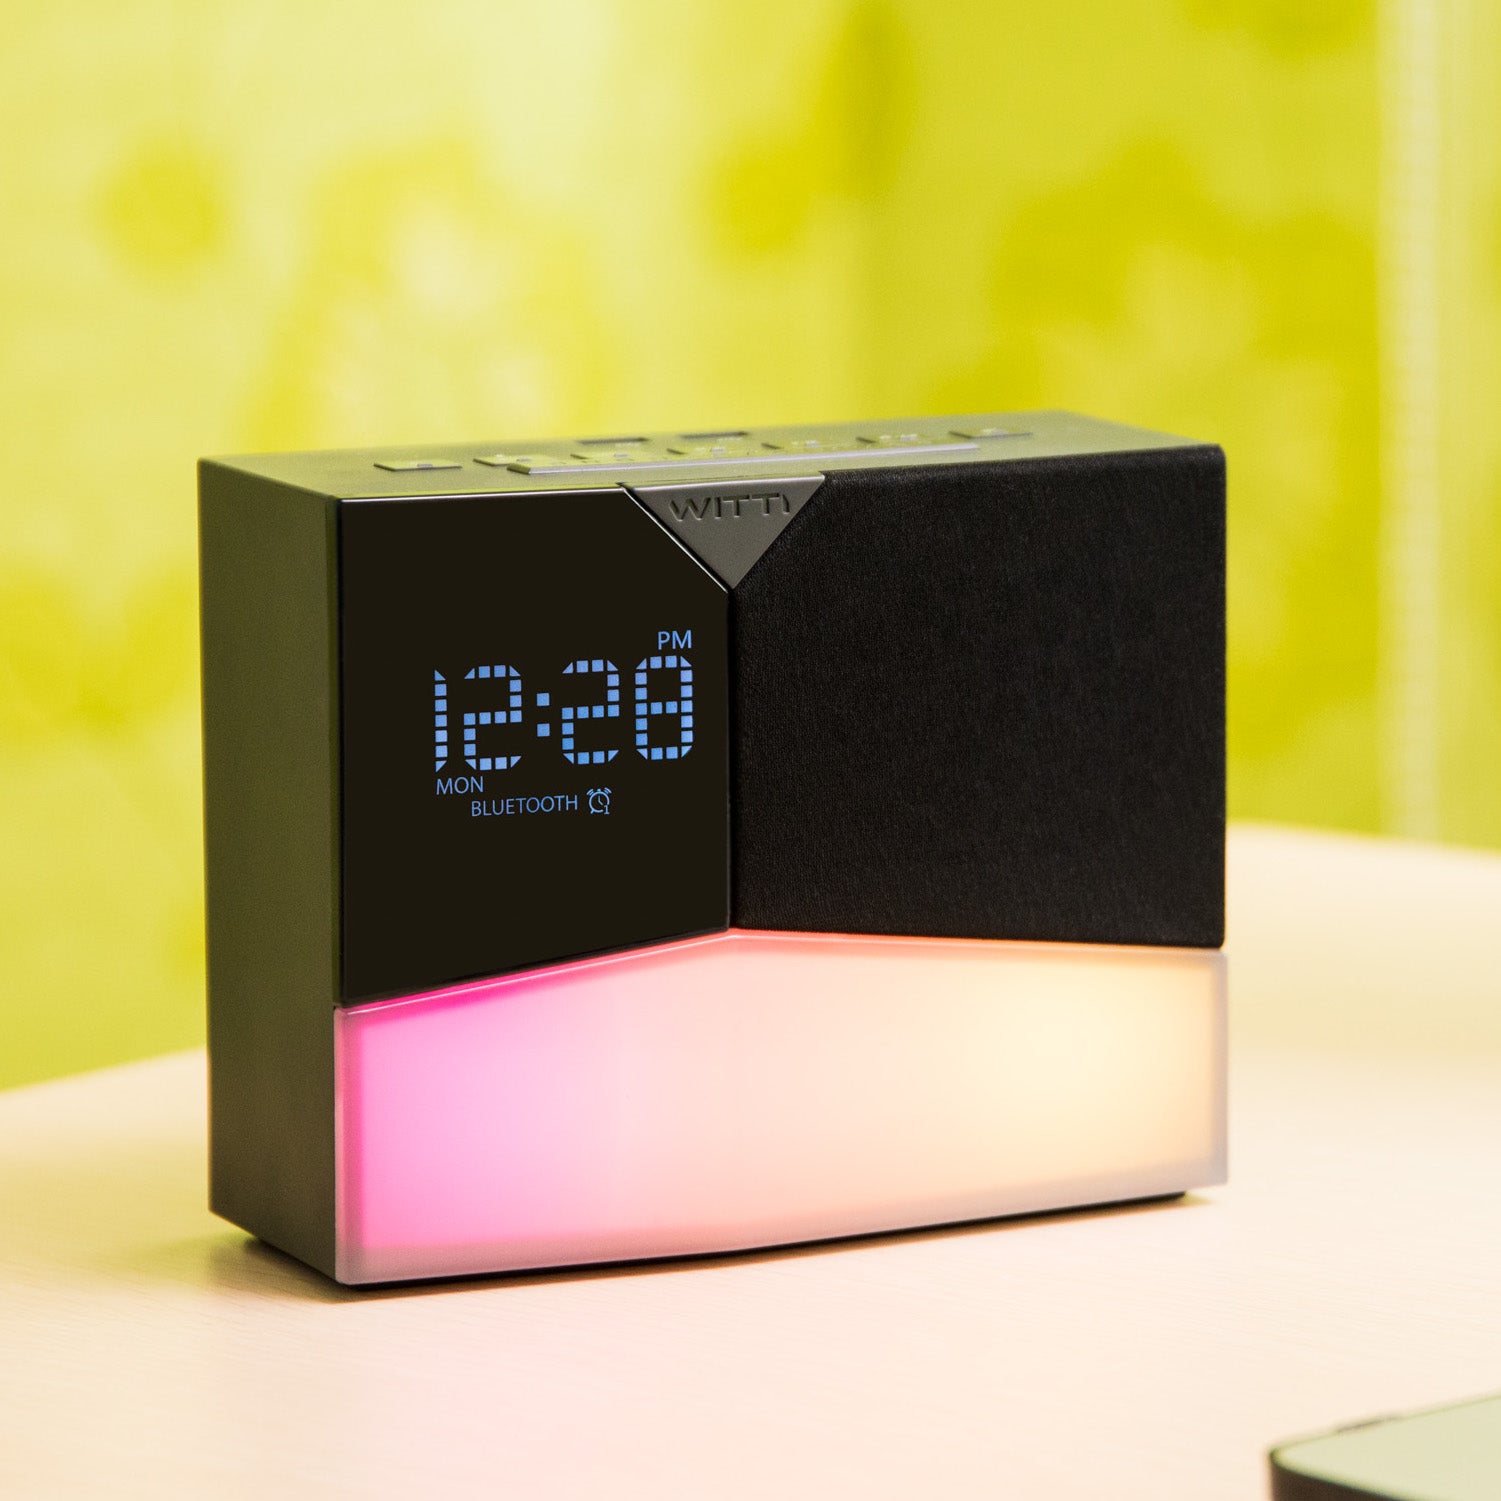 BEDDI Glow - Intelligent Alarm Clock 